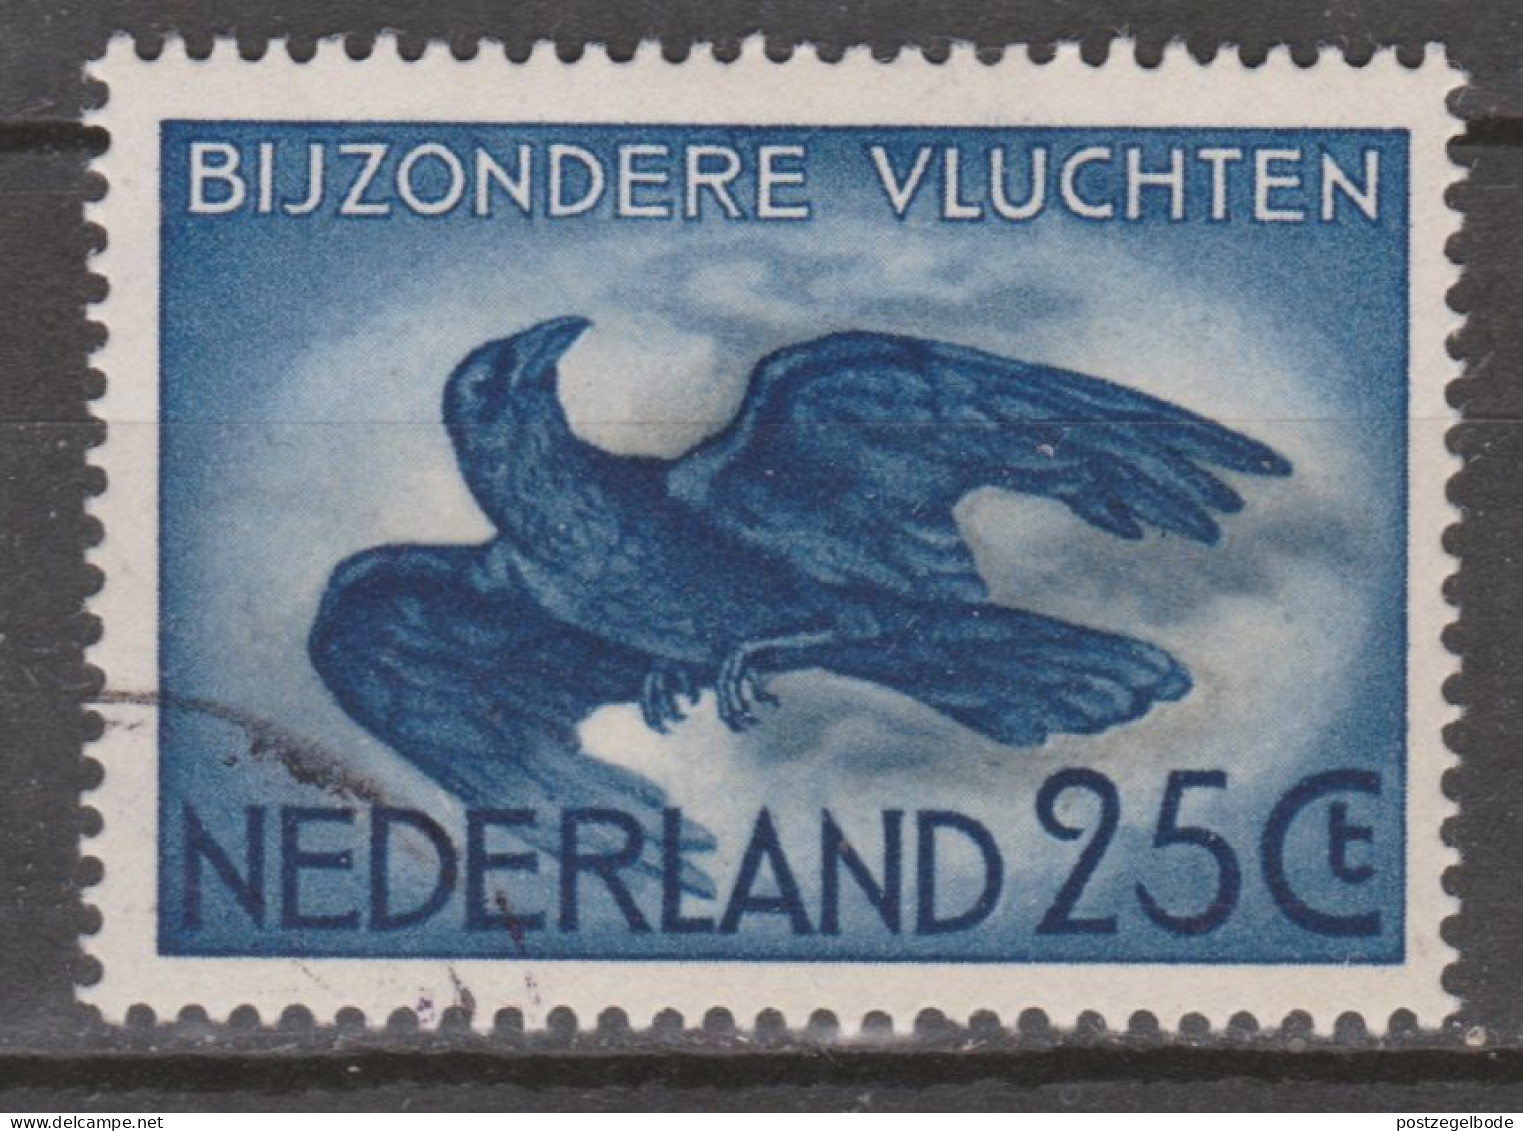 Netherlands Nederland Pays Bas Holanda Niederlande Used ; Kraai Kauw Crow Corbeau Cuervo Vogel Ave Bird Oiseau - Kuckucke & Turakos